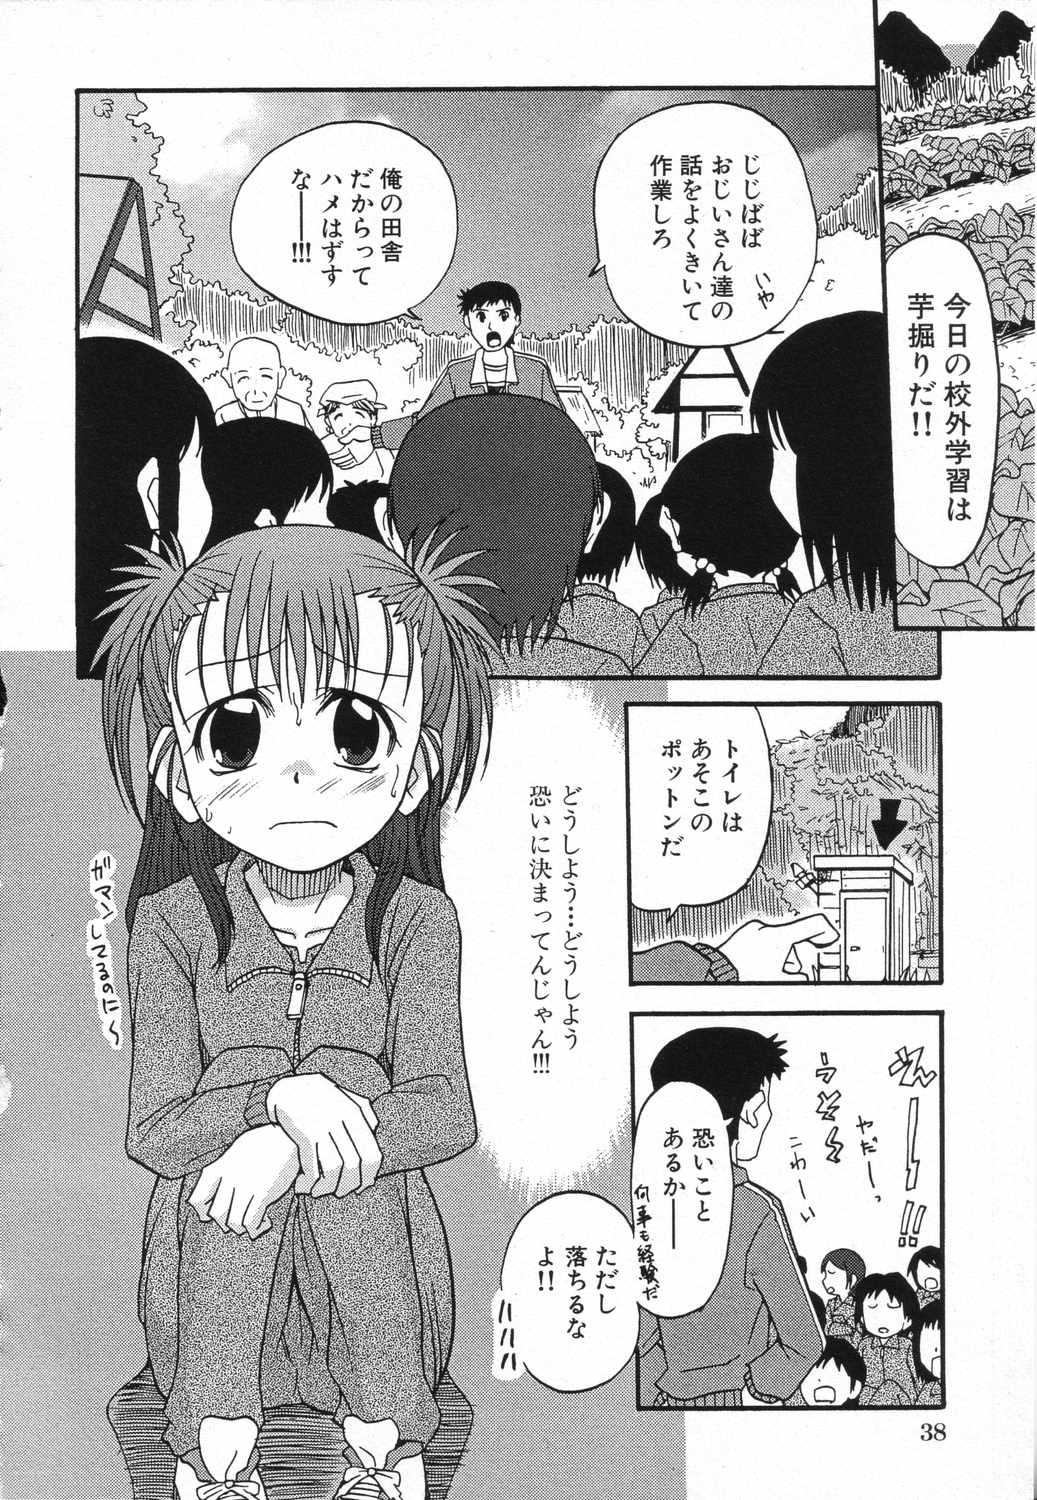 [Anthology] LOCO vol.5 Aki no Omorashi Musume Tokushuu page 41 full